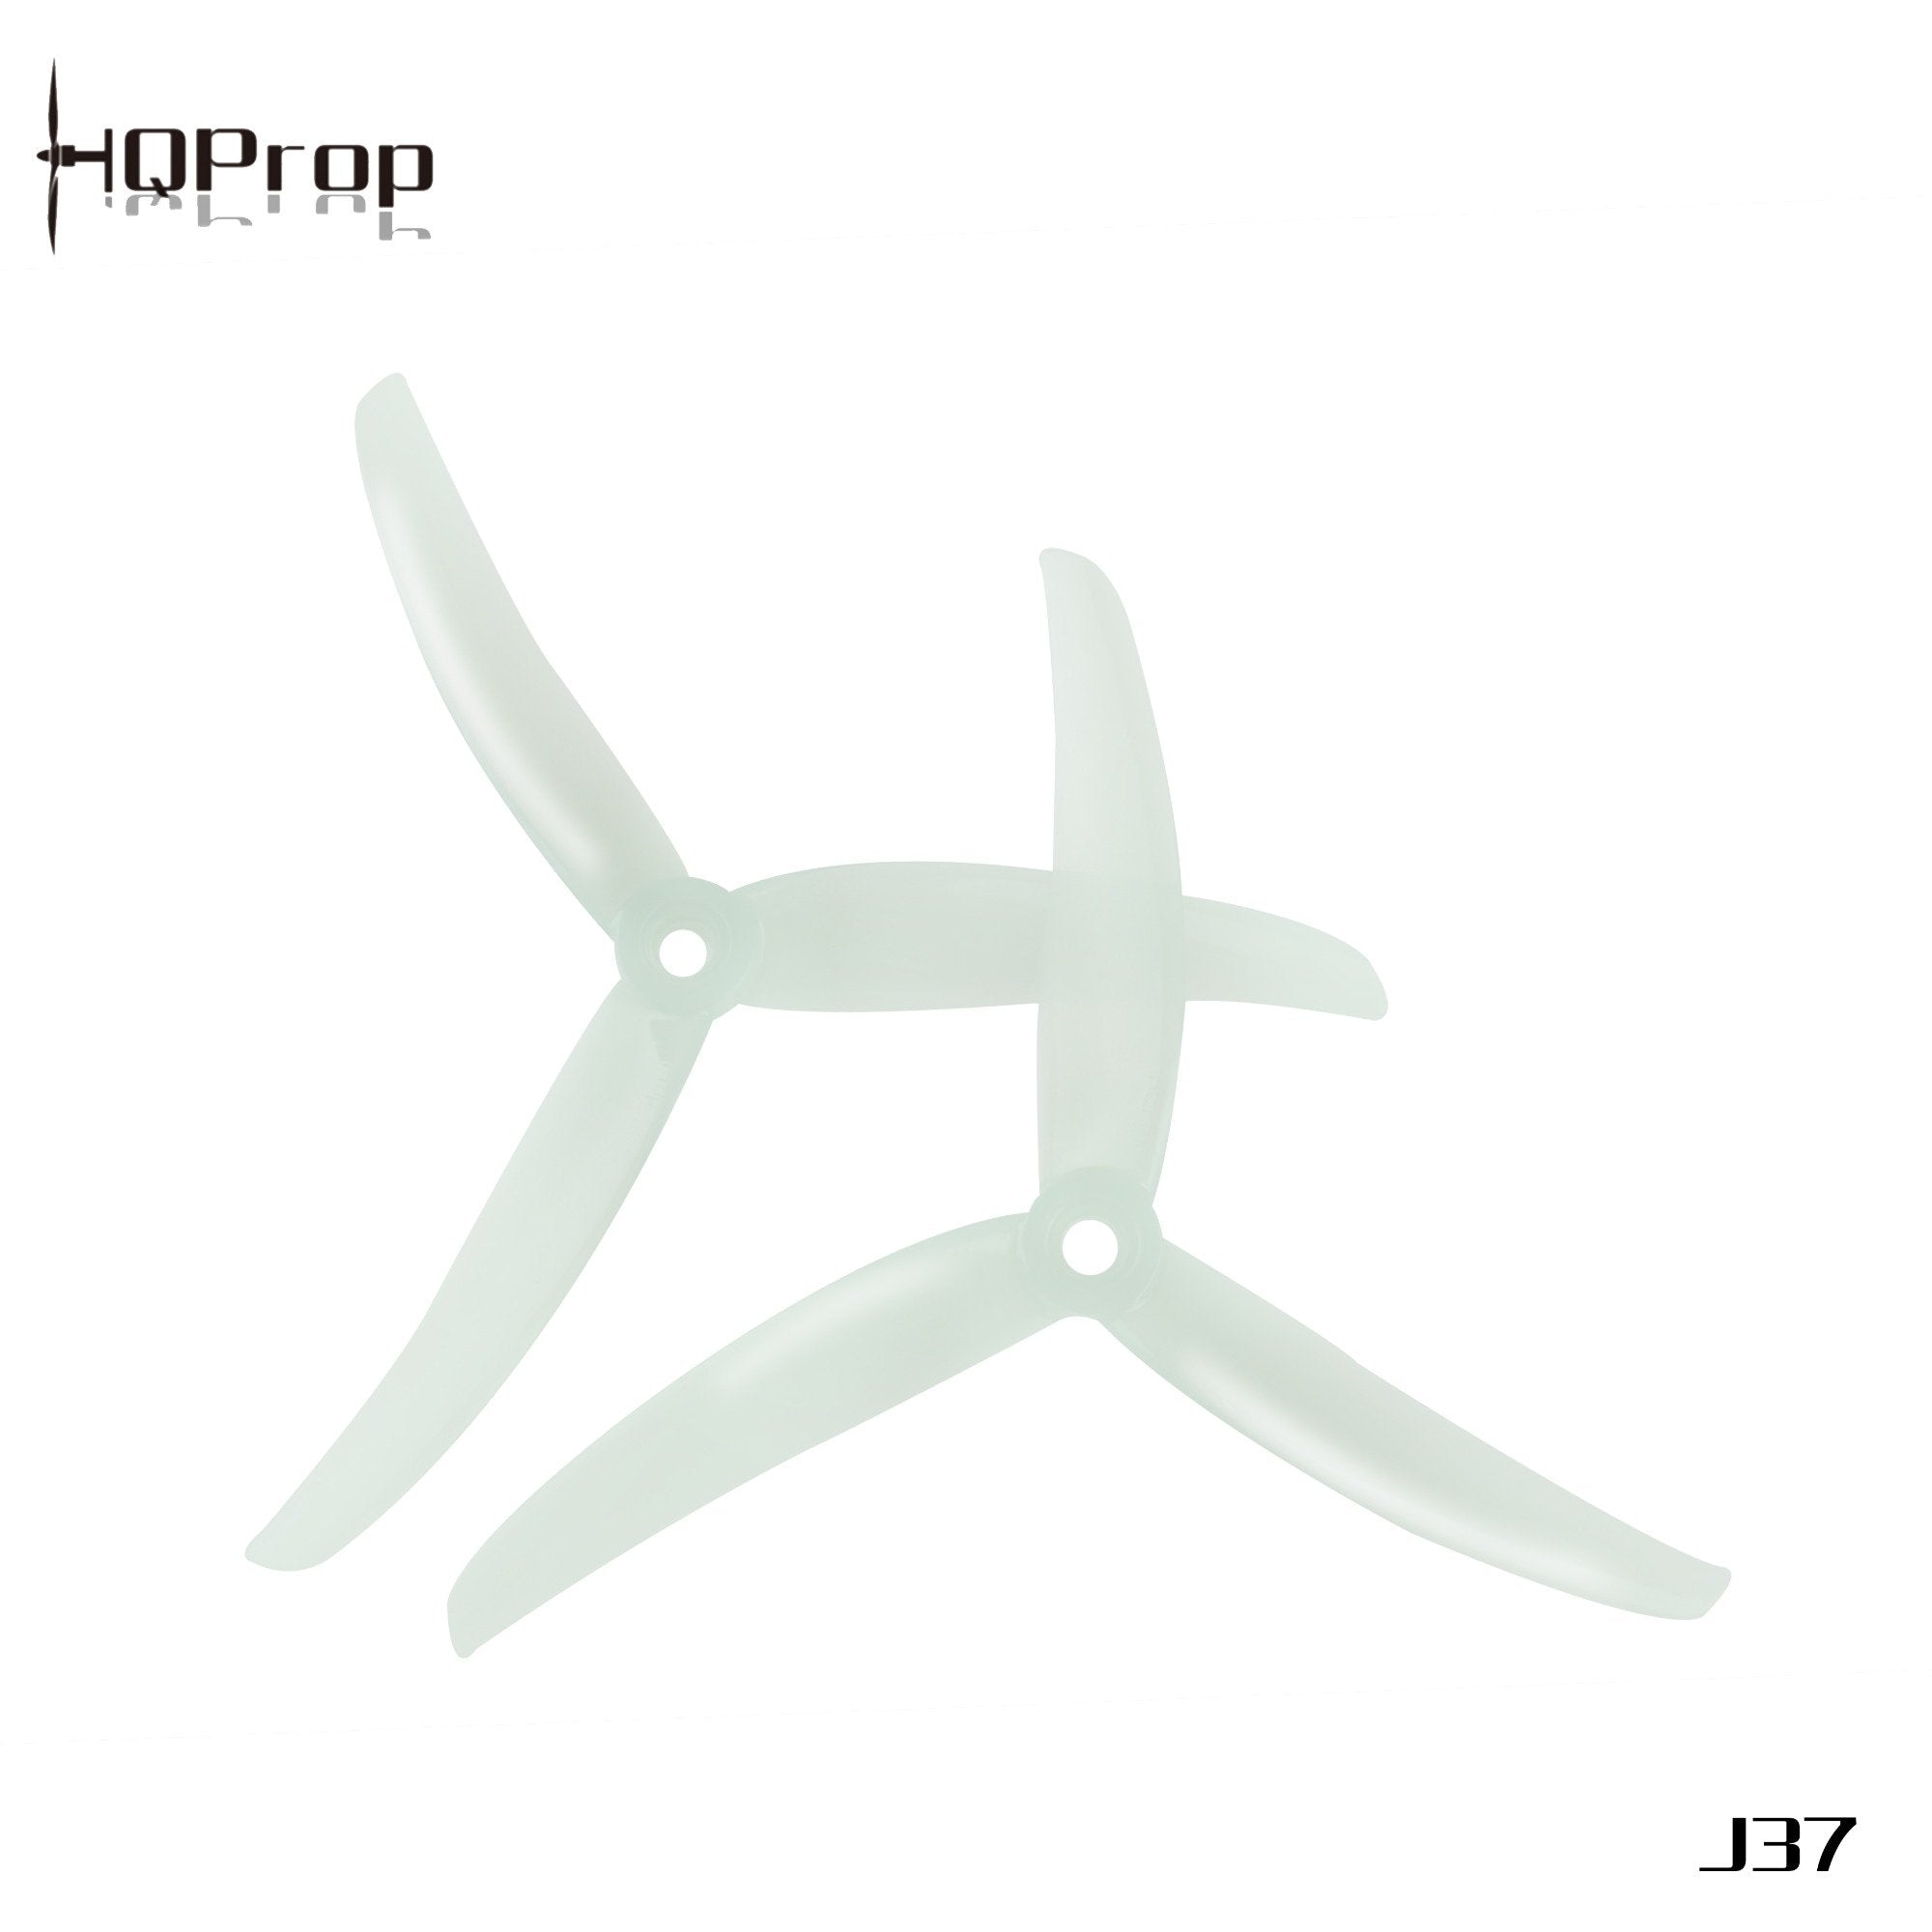 HQProp Juicy Prop J37 4.9x3.7x3 4 - HQProp - Drone Authority